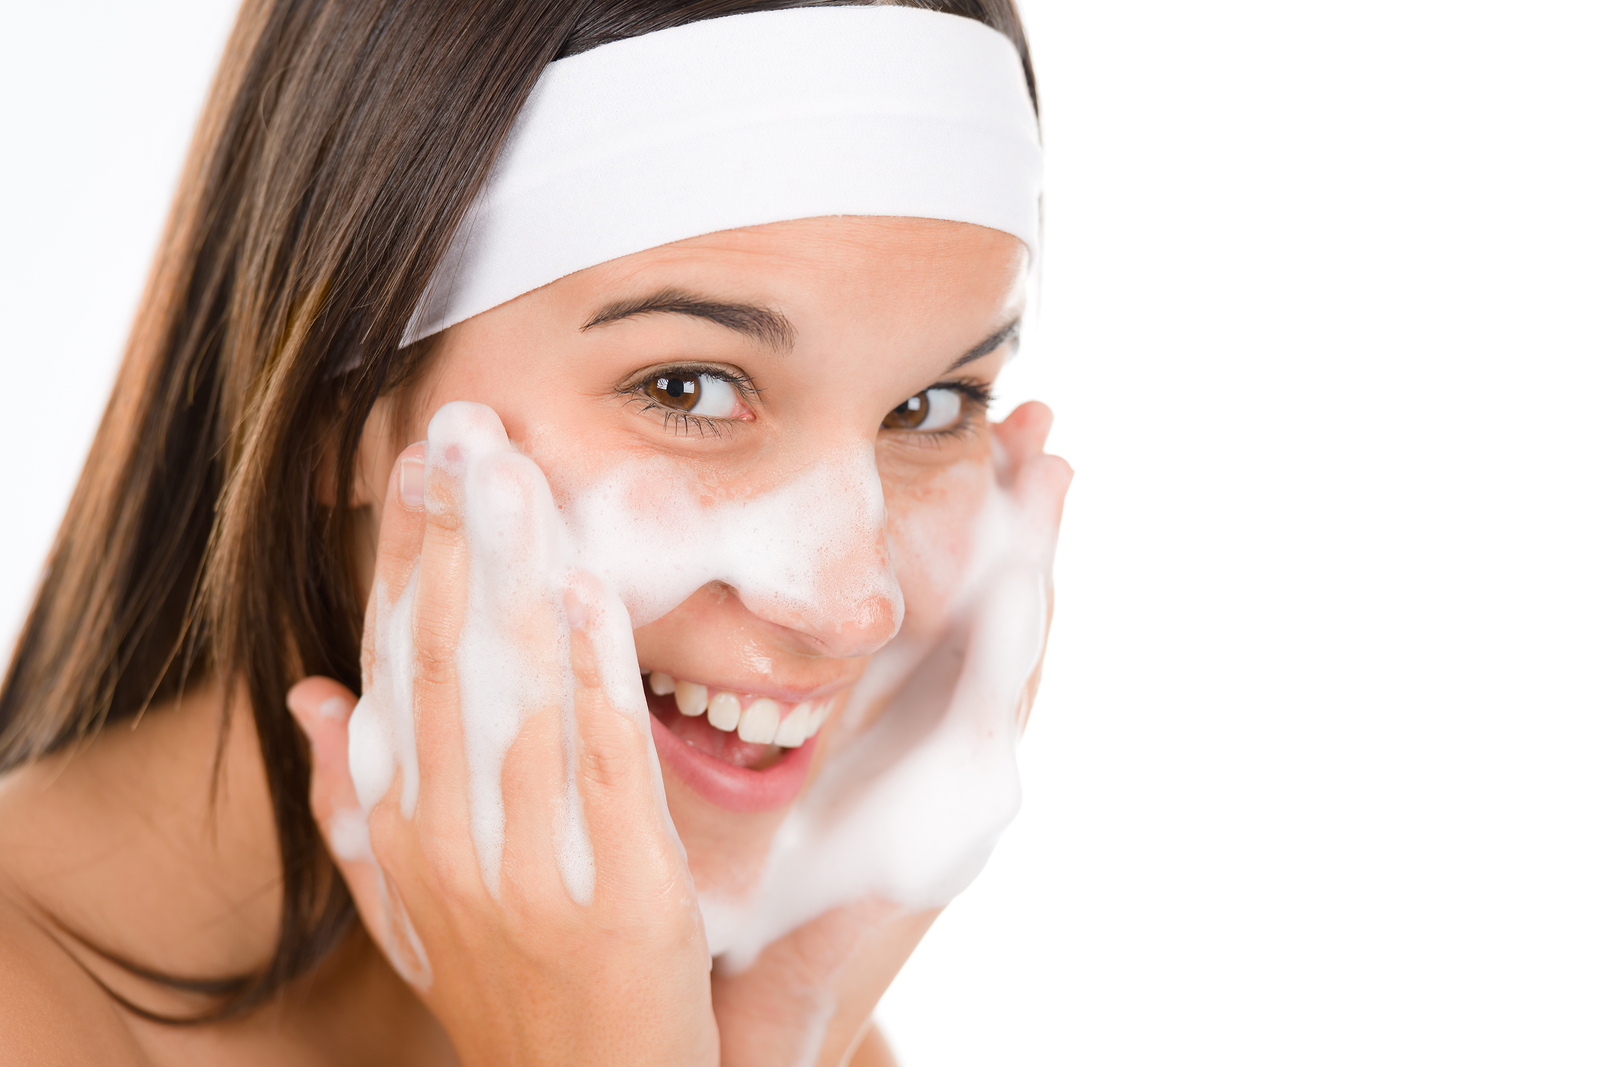 Acne facial wash